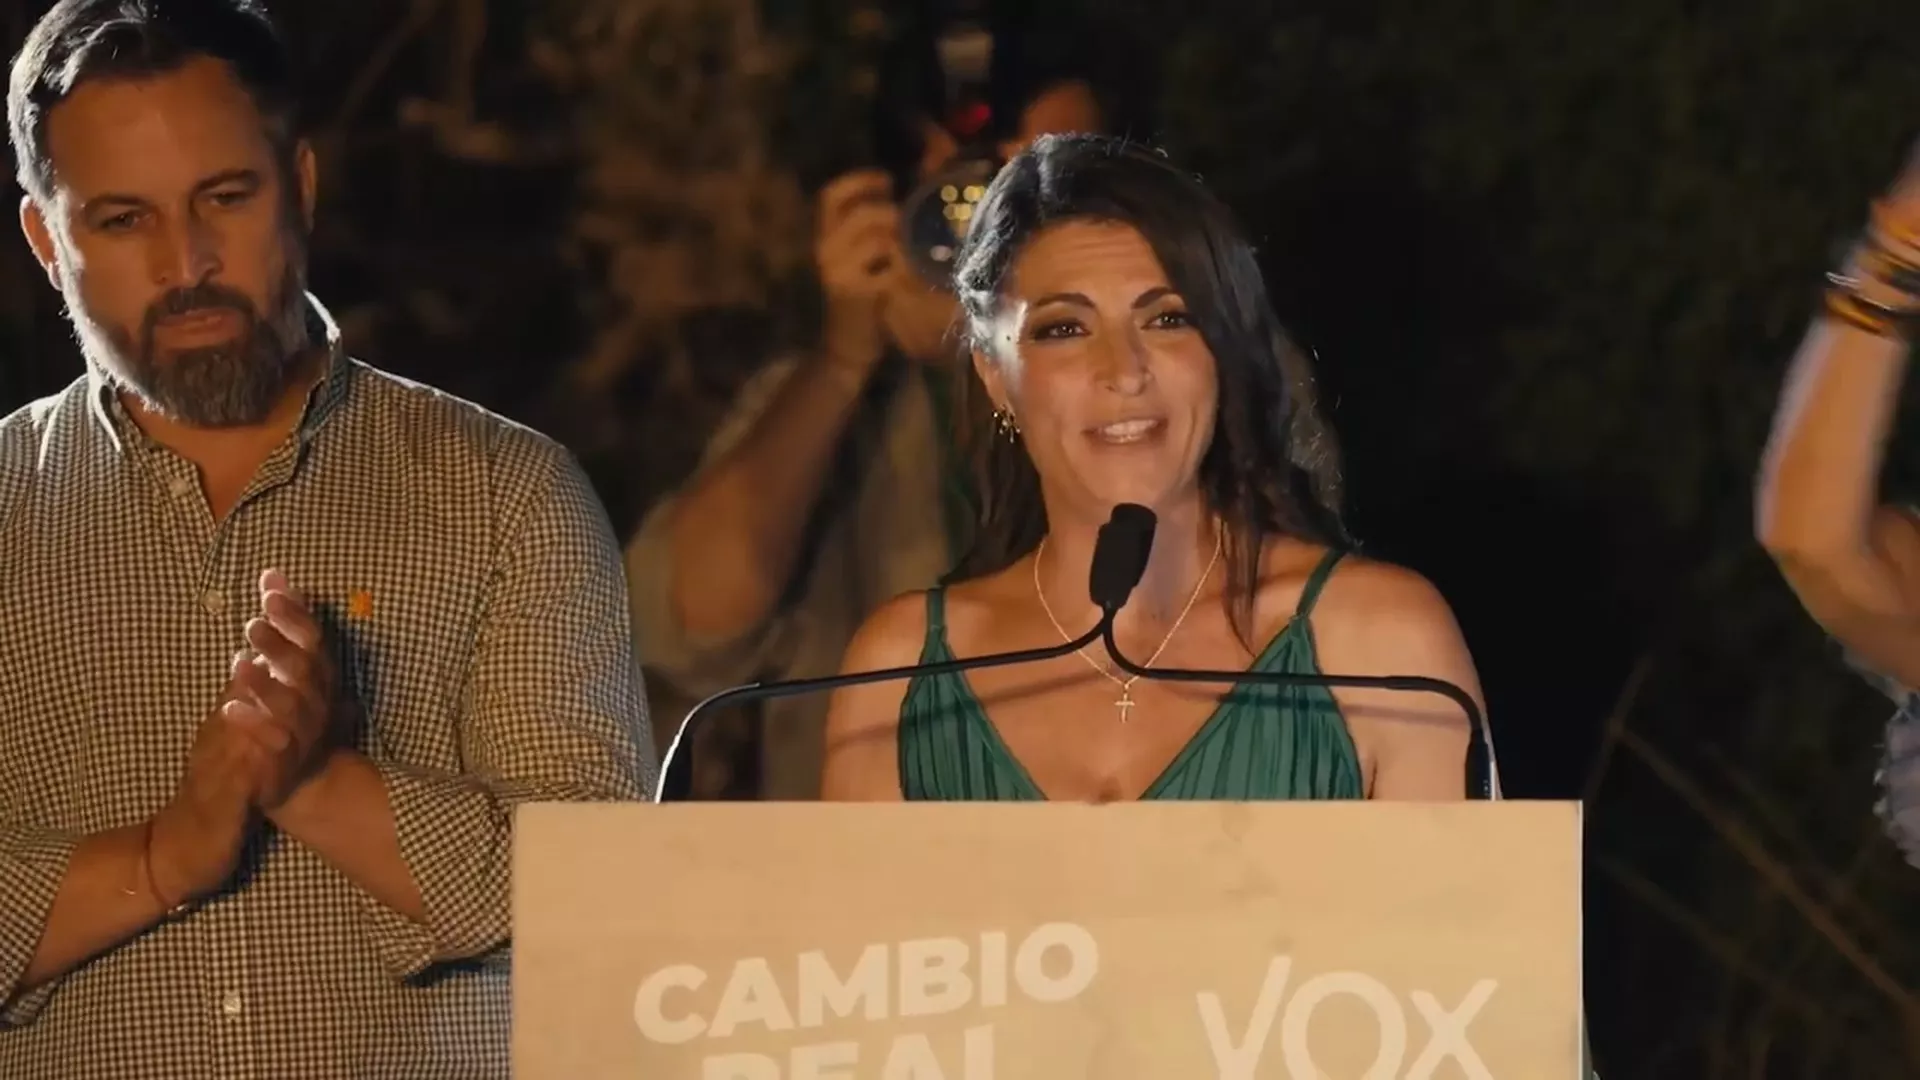 La candidata de VOX, Macarena Olona, junto al presidente del partido, Santiago Abascal